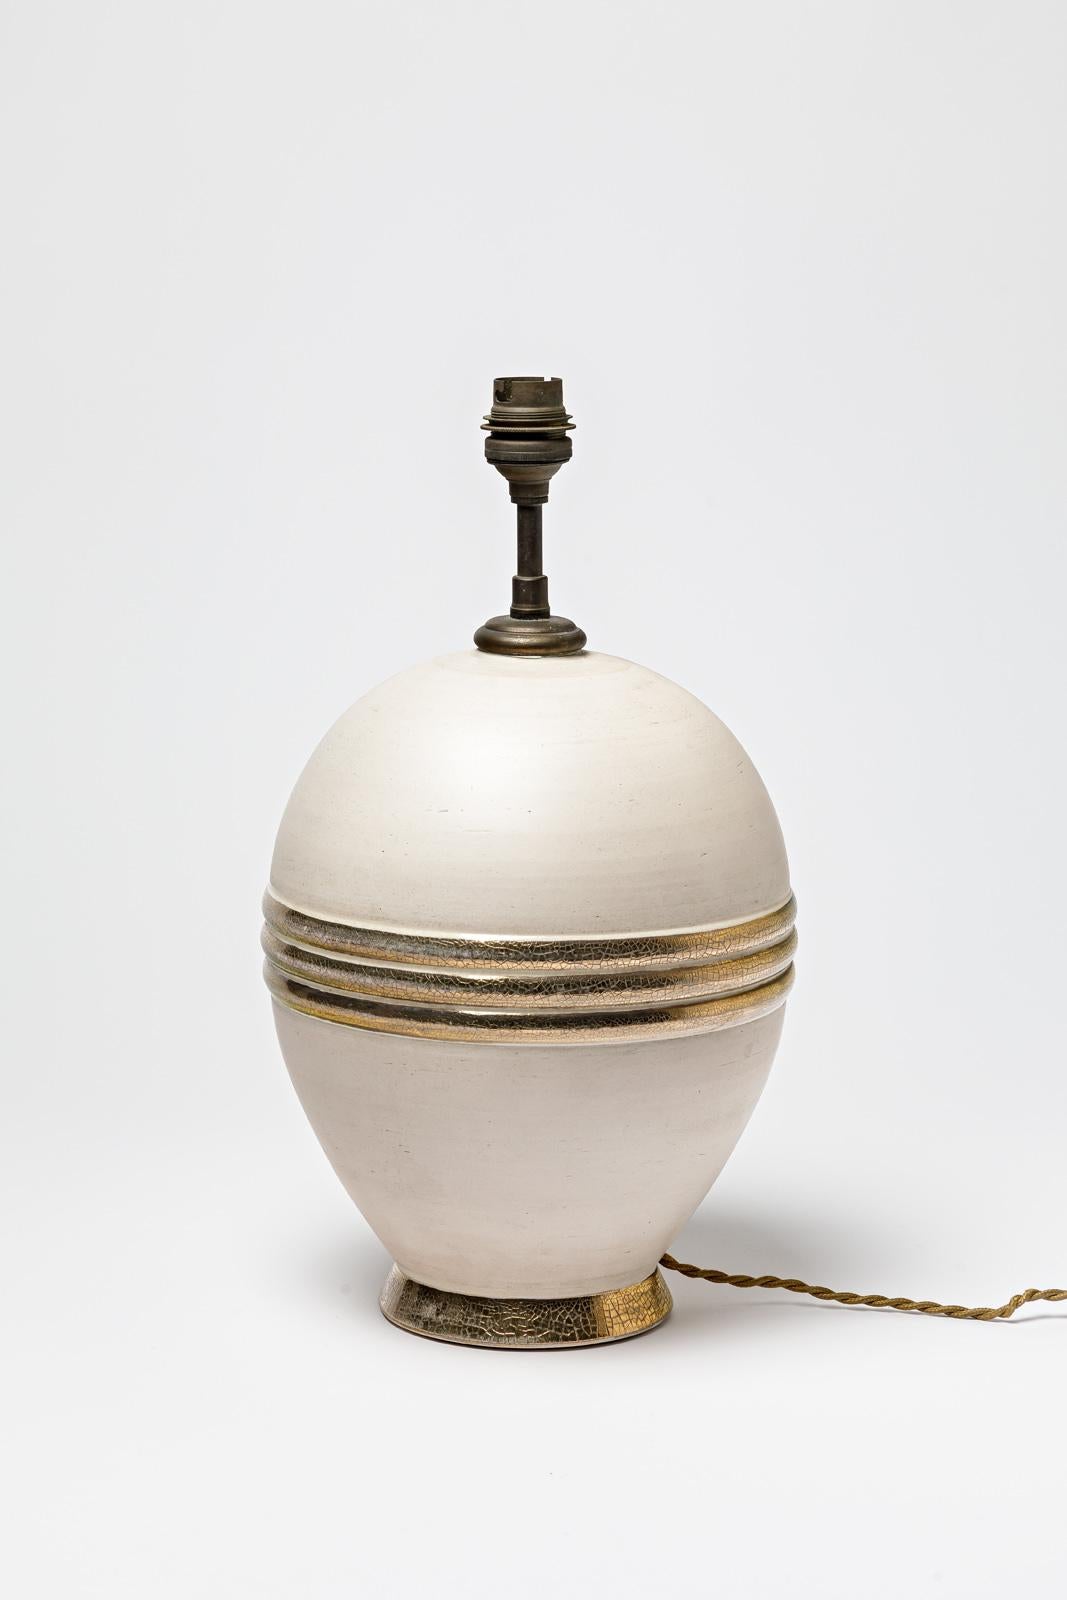 Français Lampe de table en céramique émaillée beige et or/argent, vers 1920-1930. en vente